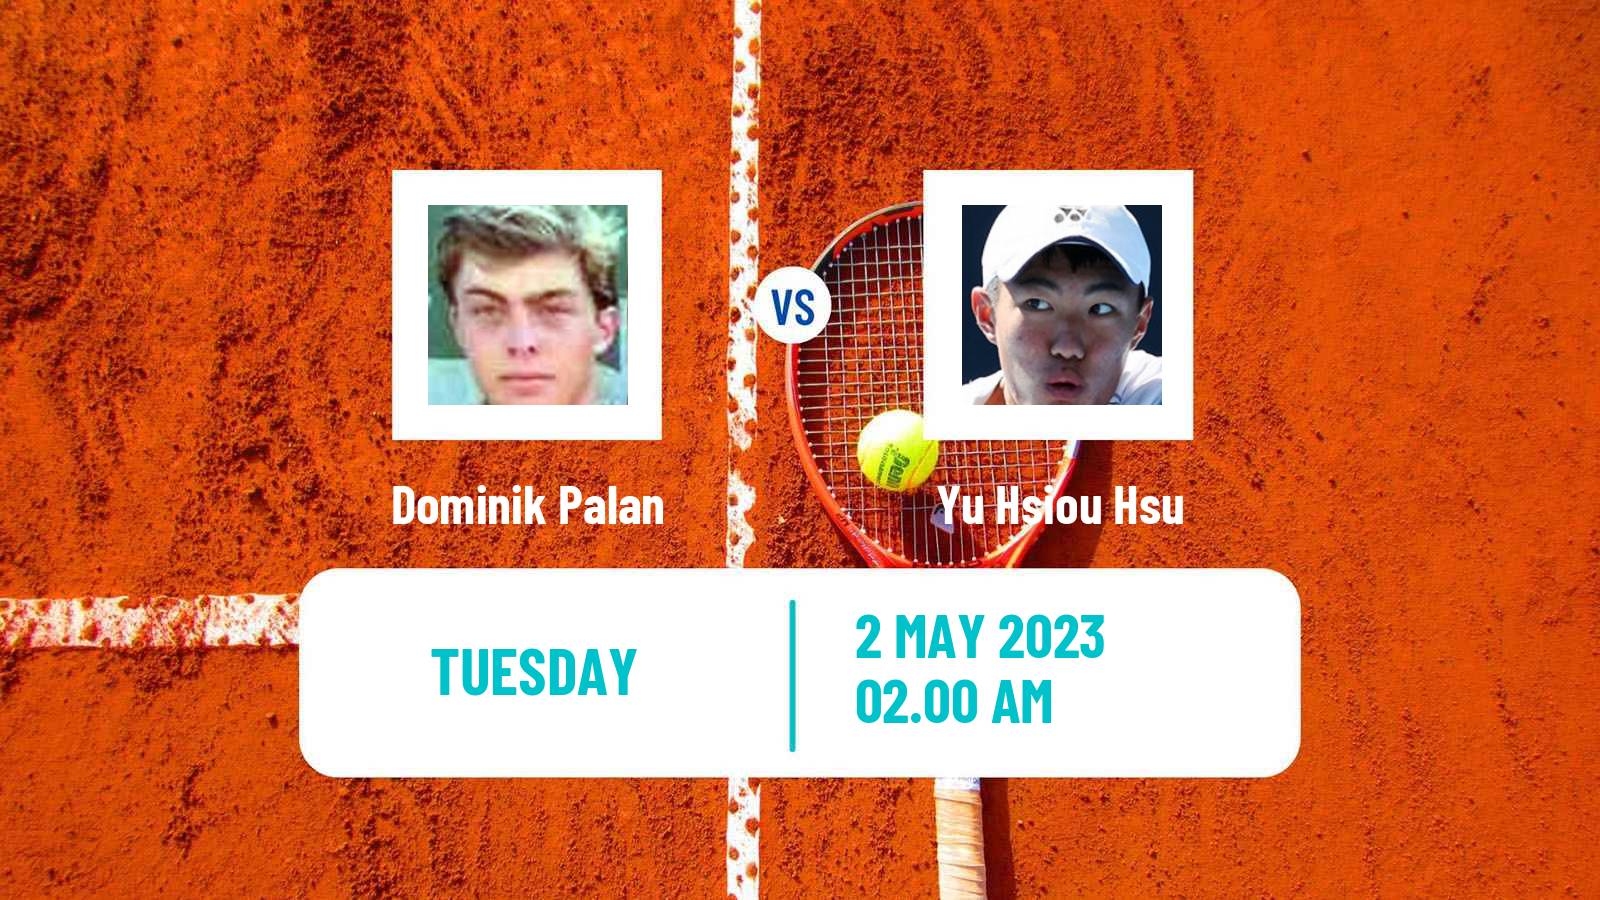 Tennis ATP Challenger Dominik Palan - Yu Hsiou Hsu